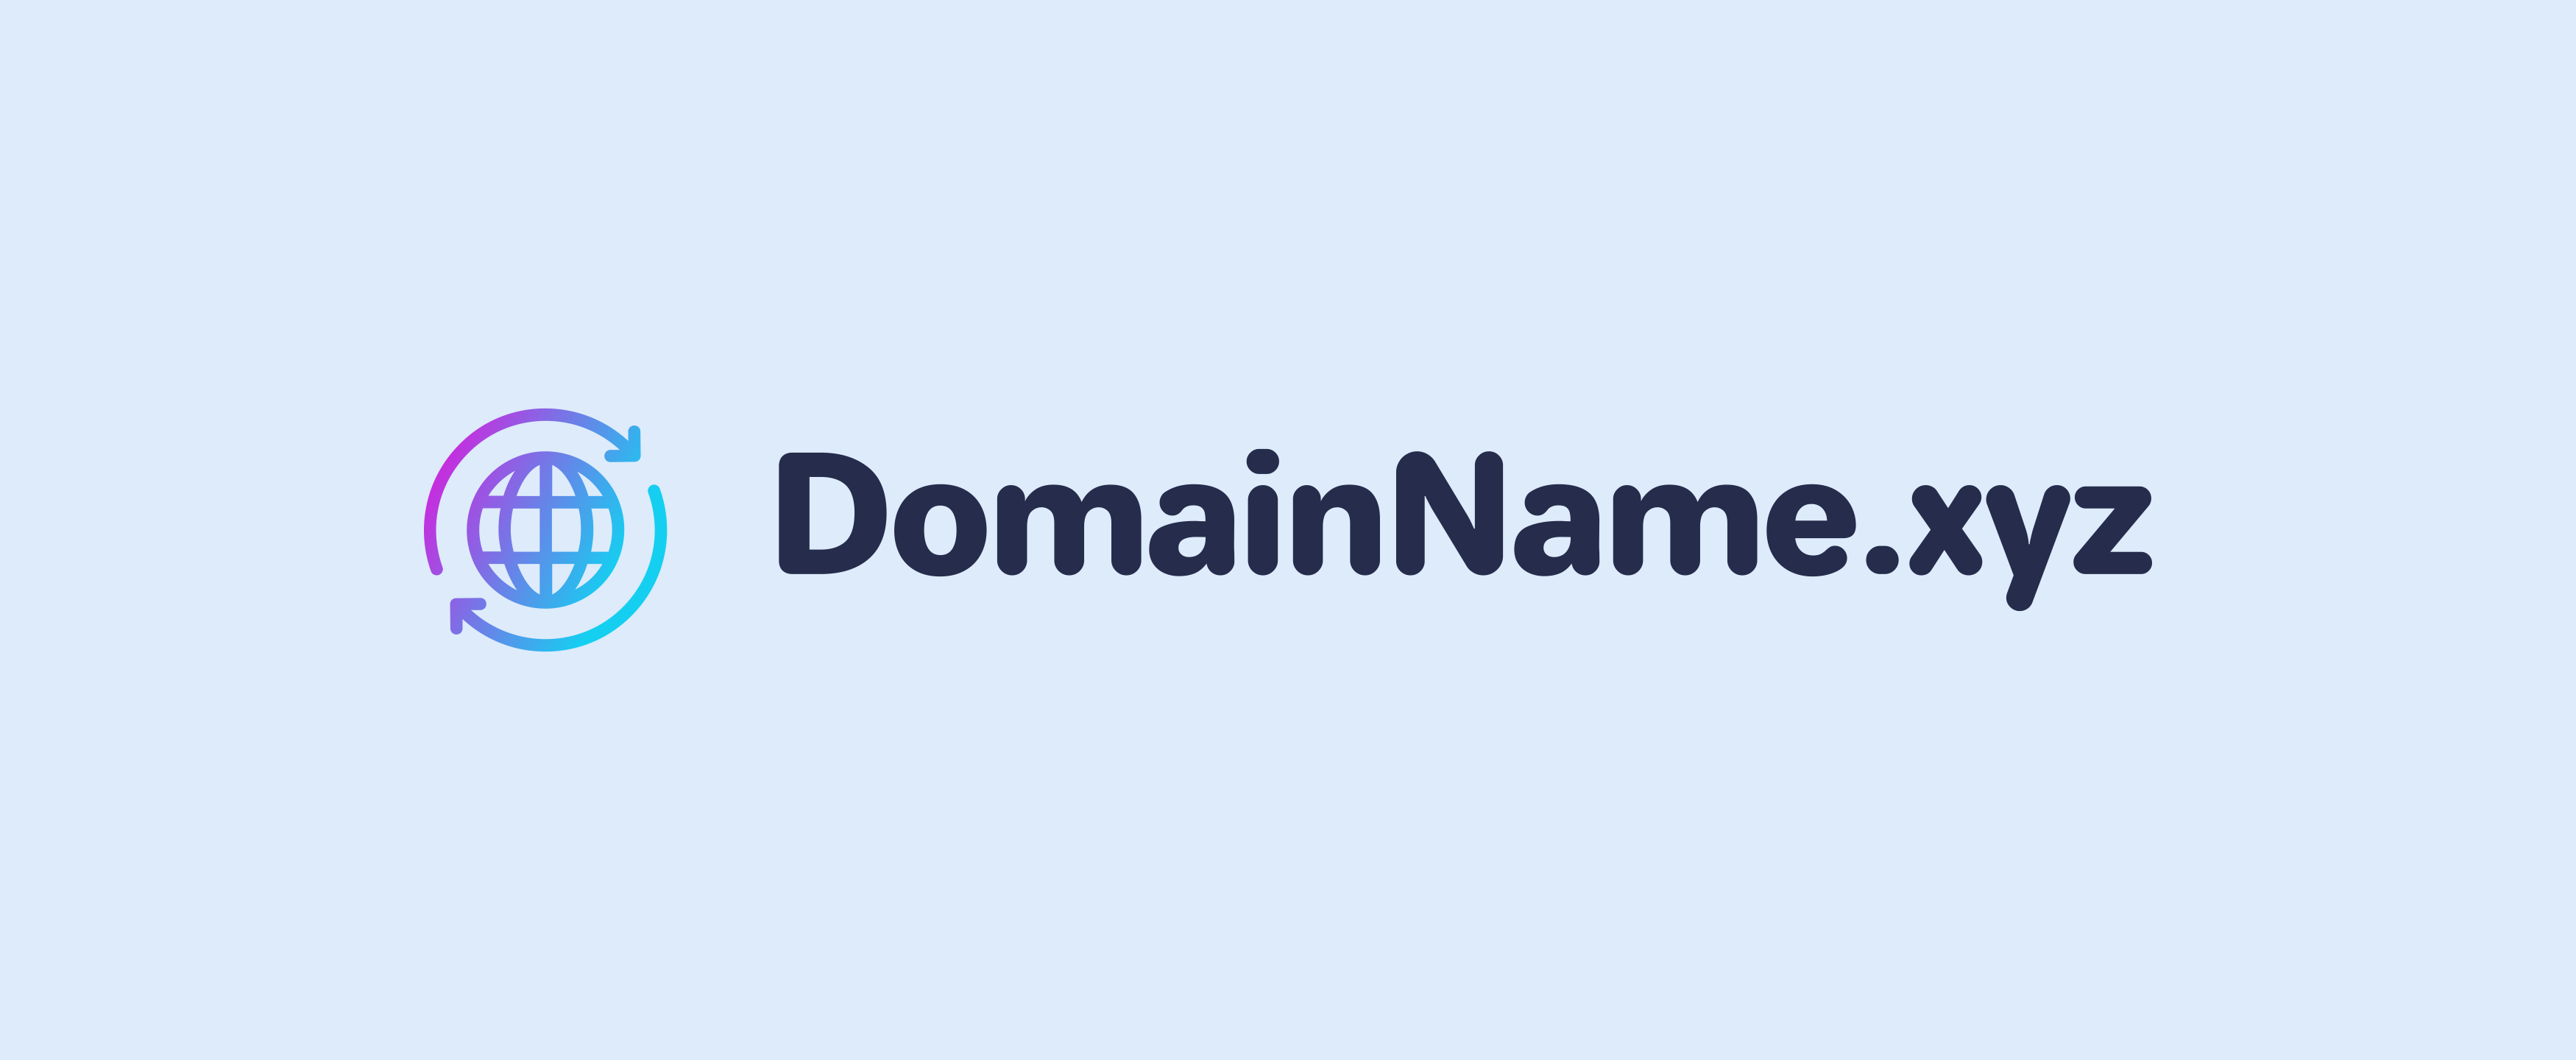 DomainName.xyz